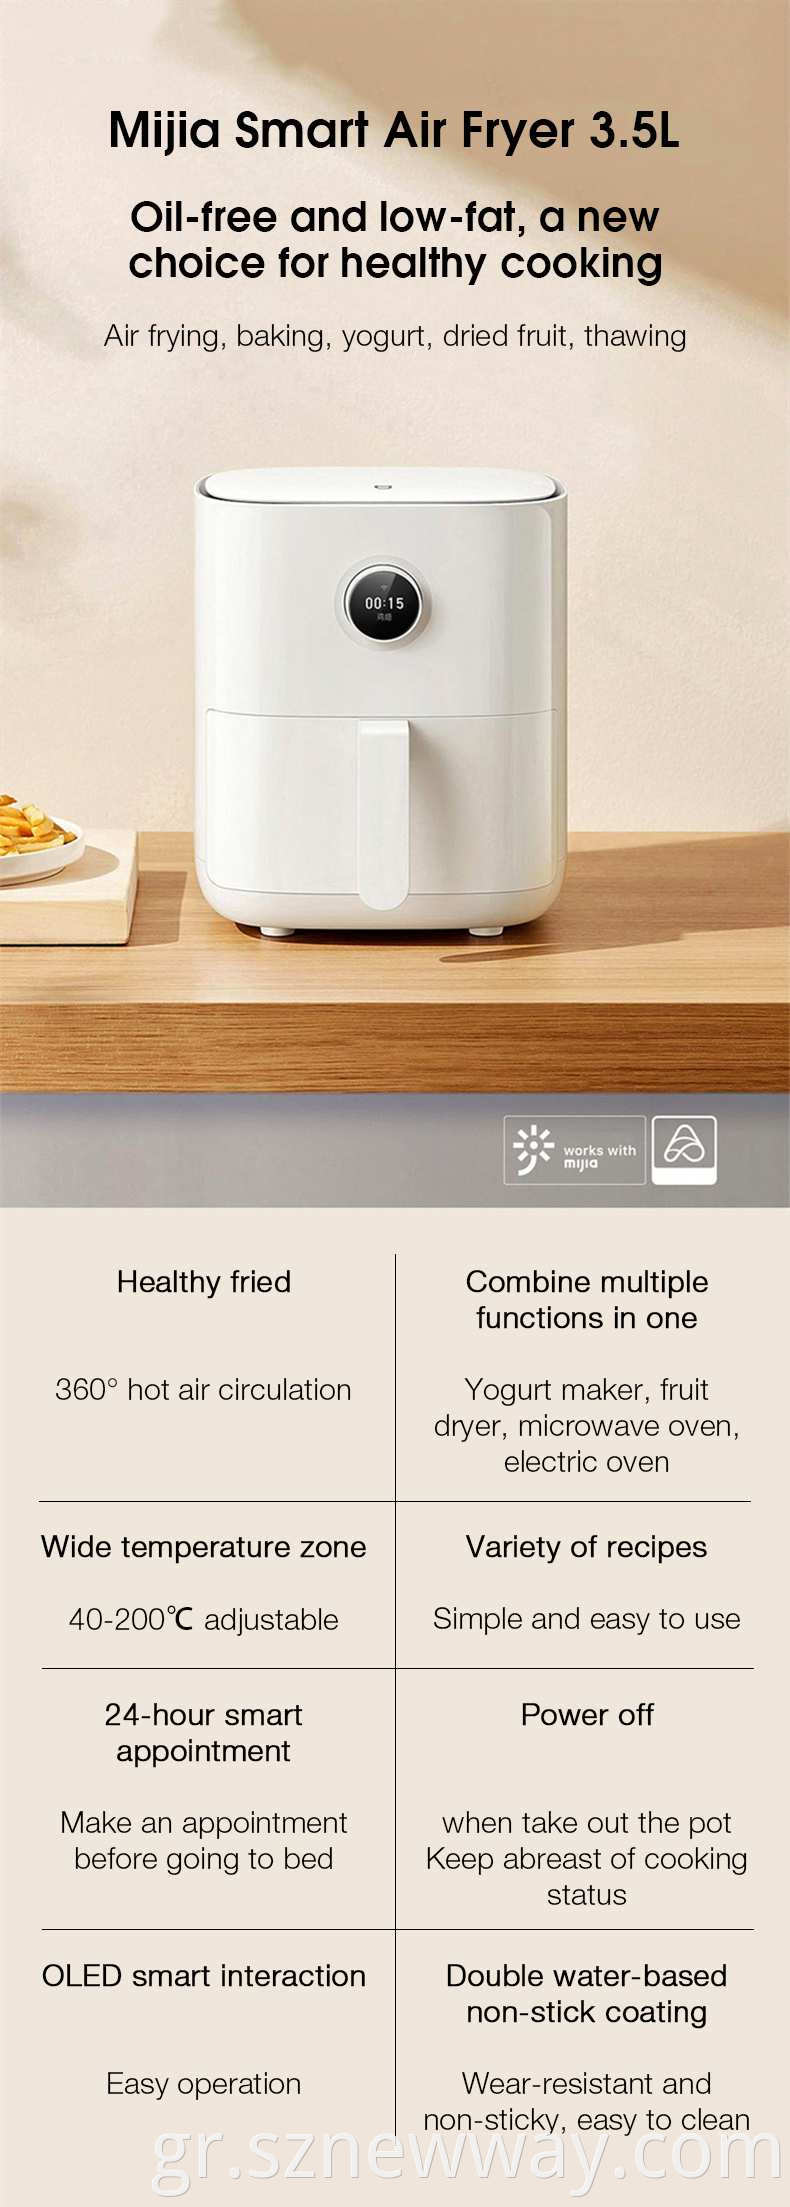 Xiaomi Mijia Smart Air Fryer